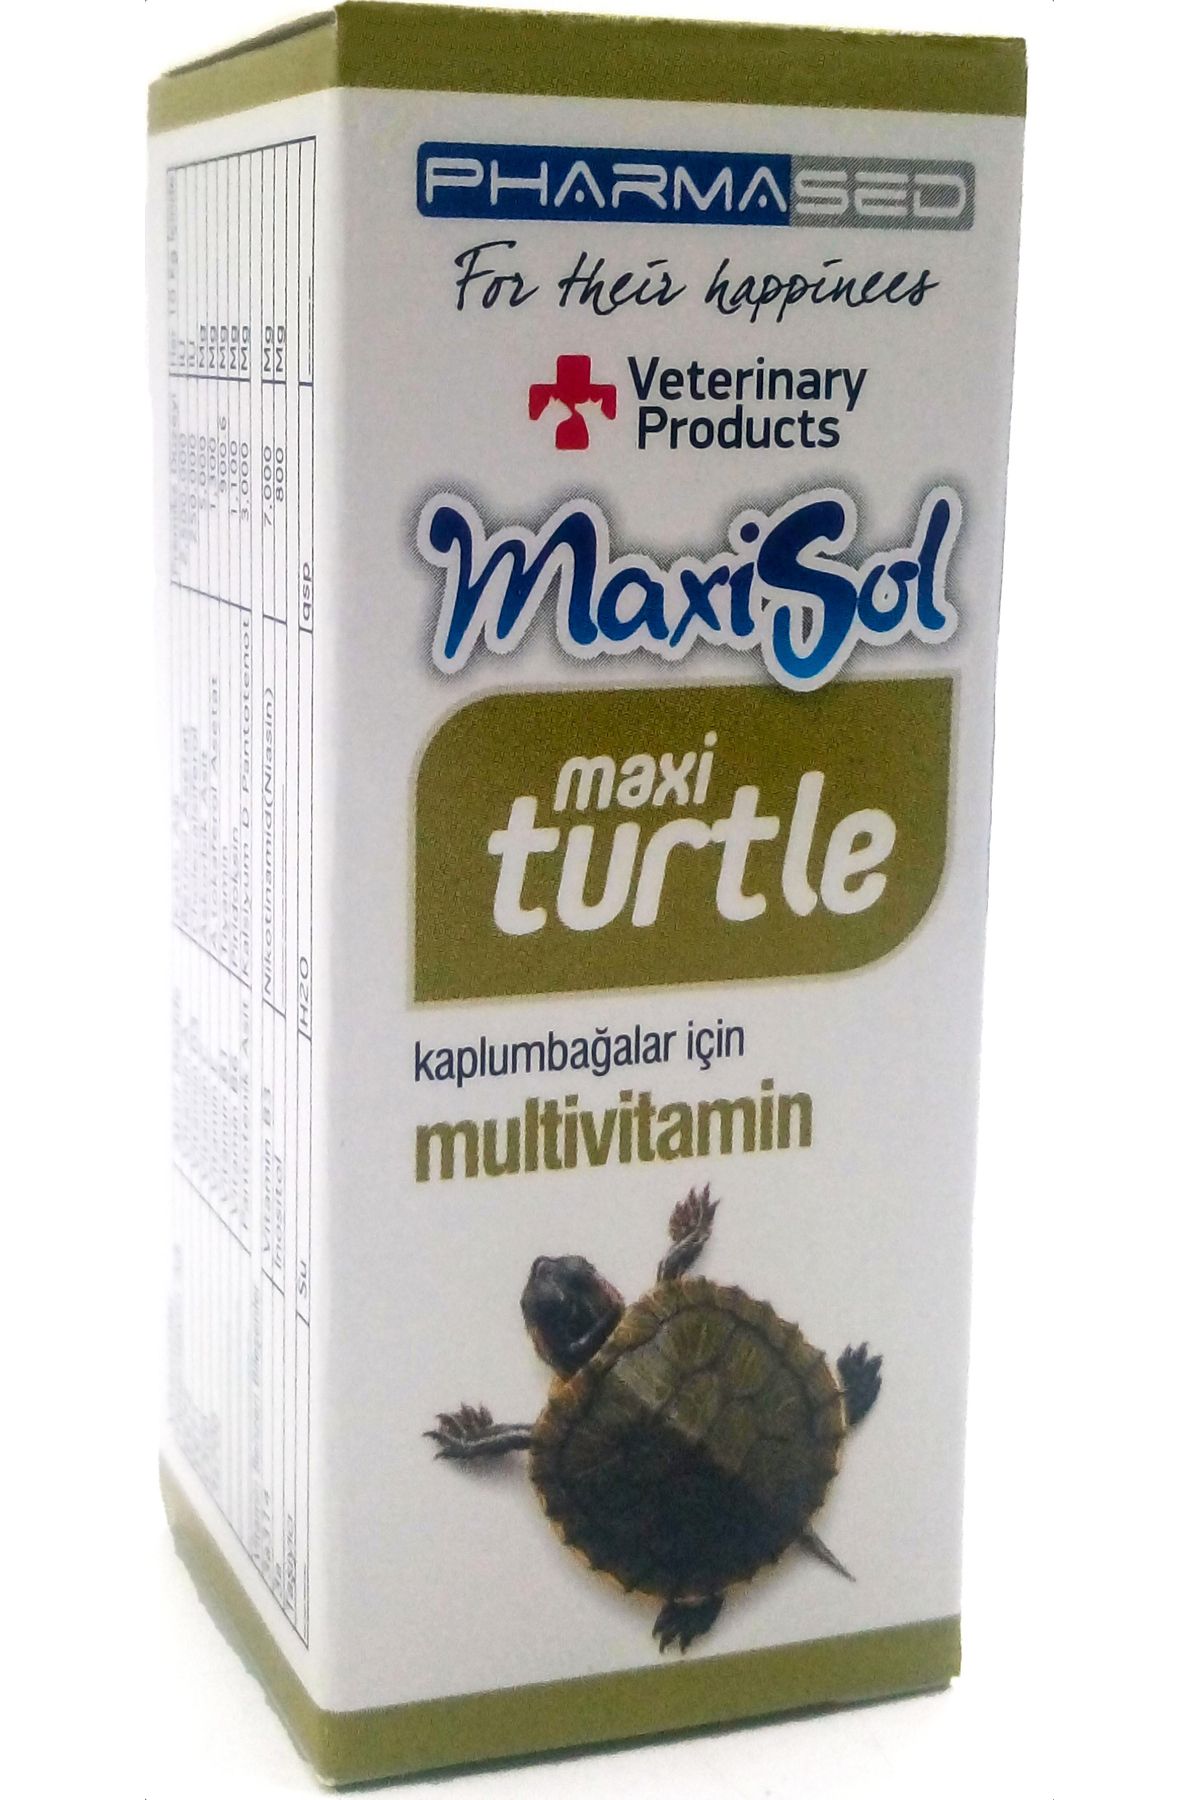 Lotus Kaplumbaga Yemi 1000ml, terrapin 100 ml Turtle Sticks, Multivitamin Seti